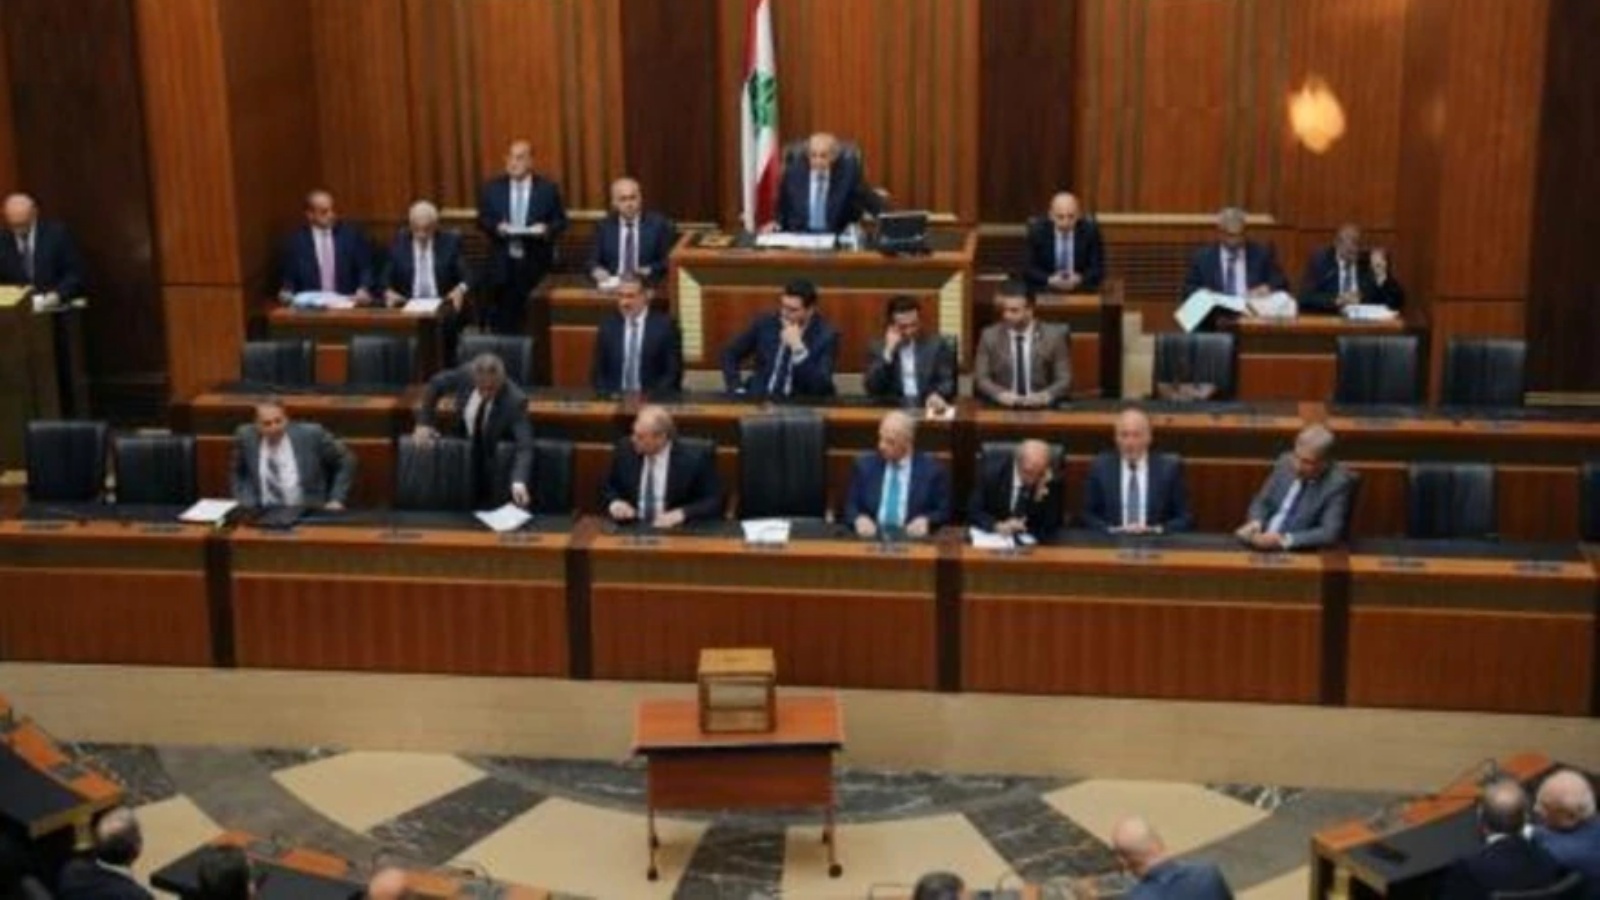 رئيس مجلس النواب اللبناني (وسط أعلى الصورة) نبيه بري مفتتحا الجلسة الأولى لانتخاب رئيس جديد للبلاد في بيروت في 29 سبتمبر 2022